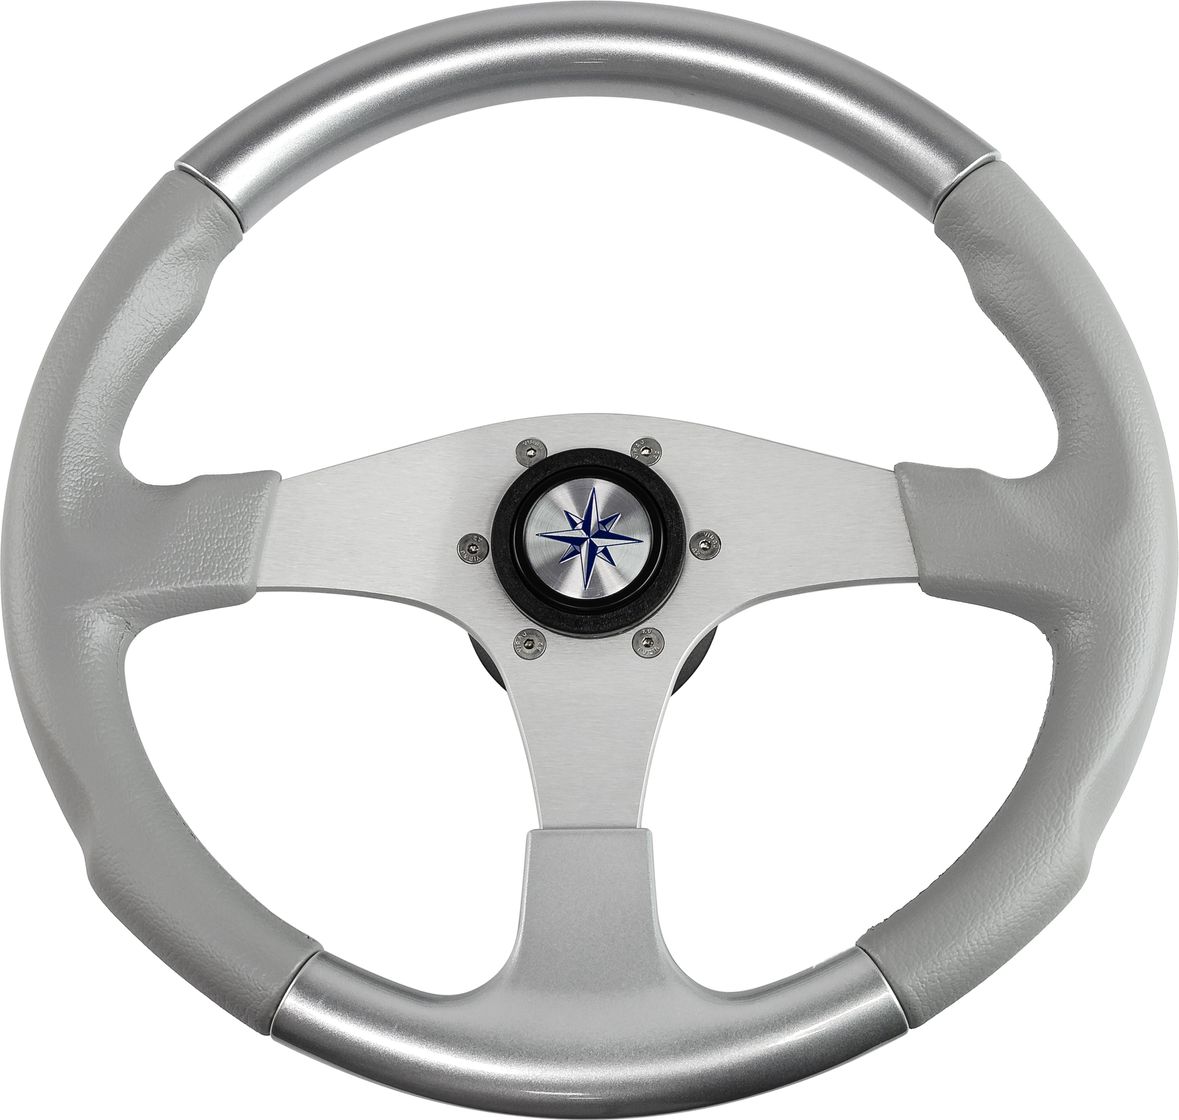 Рулевое колесо EVO MARINE 2 обод серосеребряный, спицы серебряные д. 355 мм VN850003-93 рулевое колесо evo marine 2 обод серый спицы серебряные д 355 мм vn850003 35